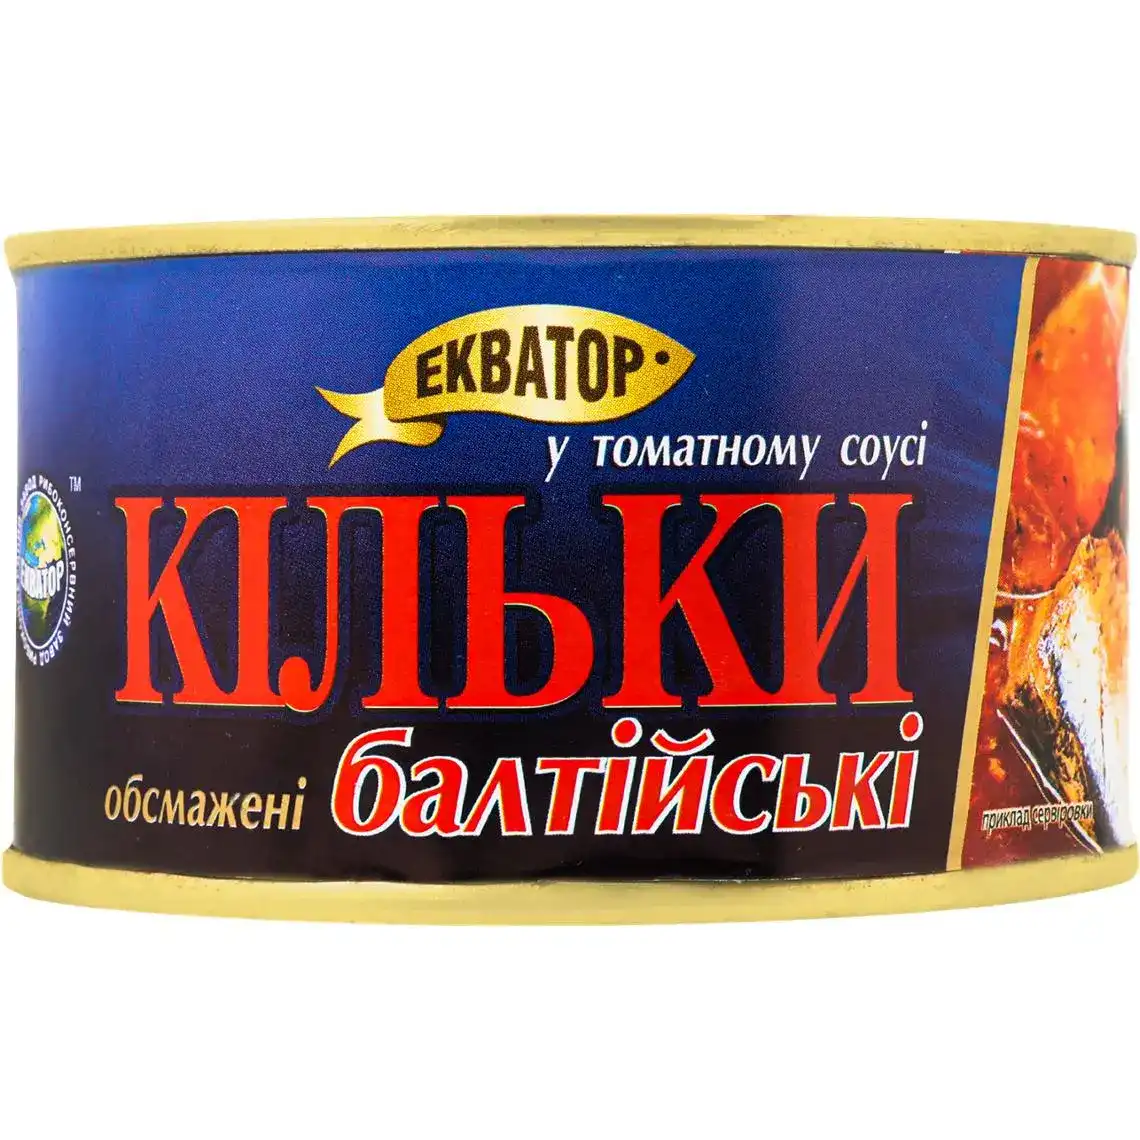 Кілька Екватор балтійська в томатному соусі 230 г